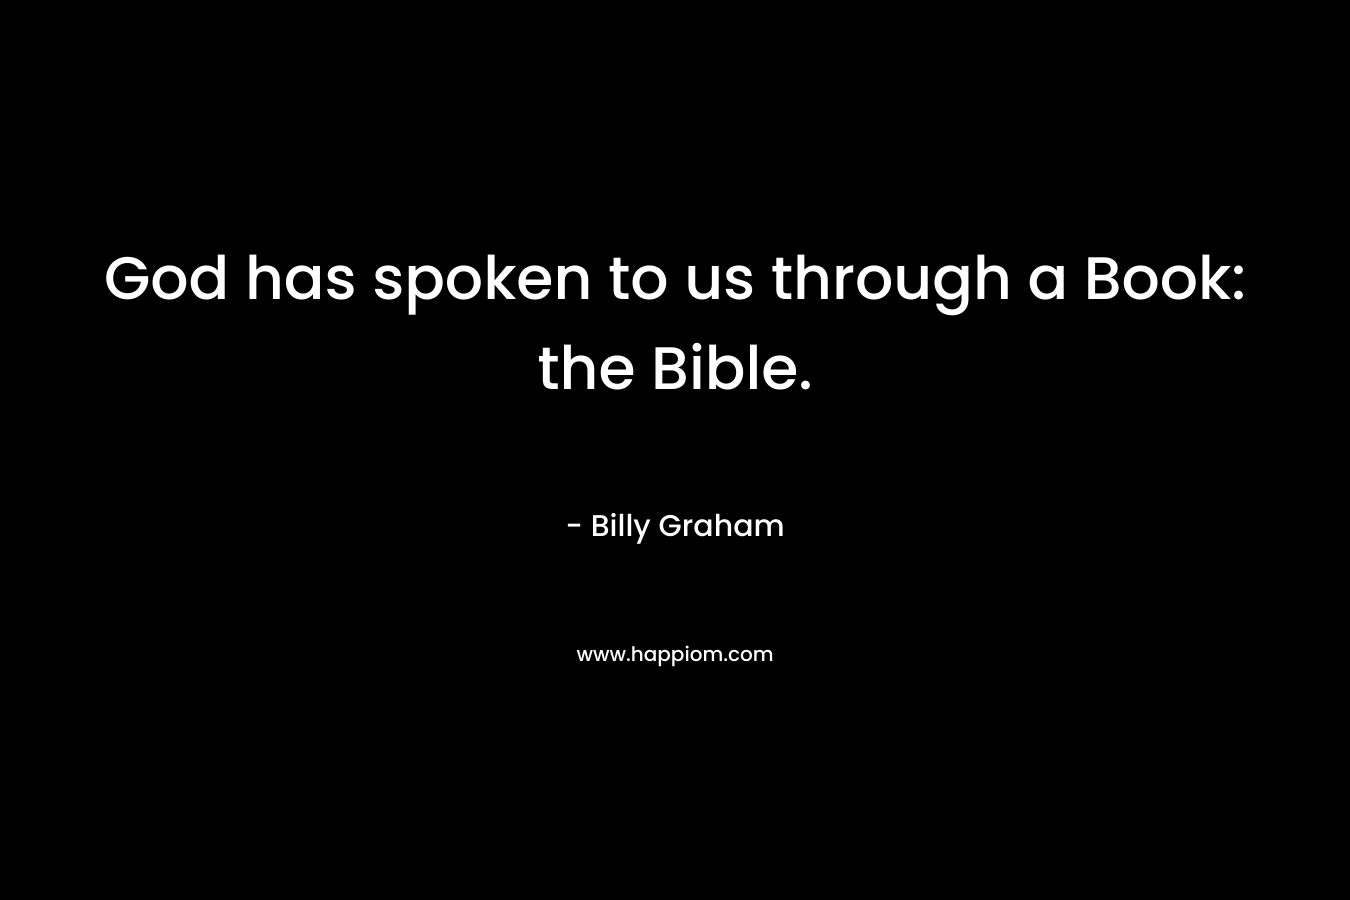 God has spoken to us through a Book: the Bible.